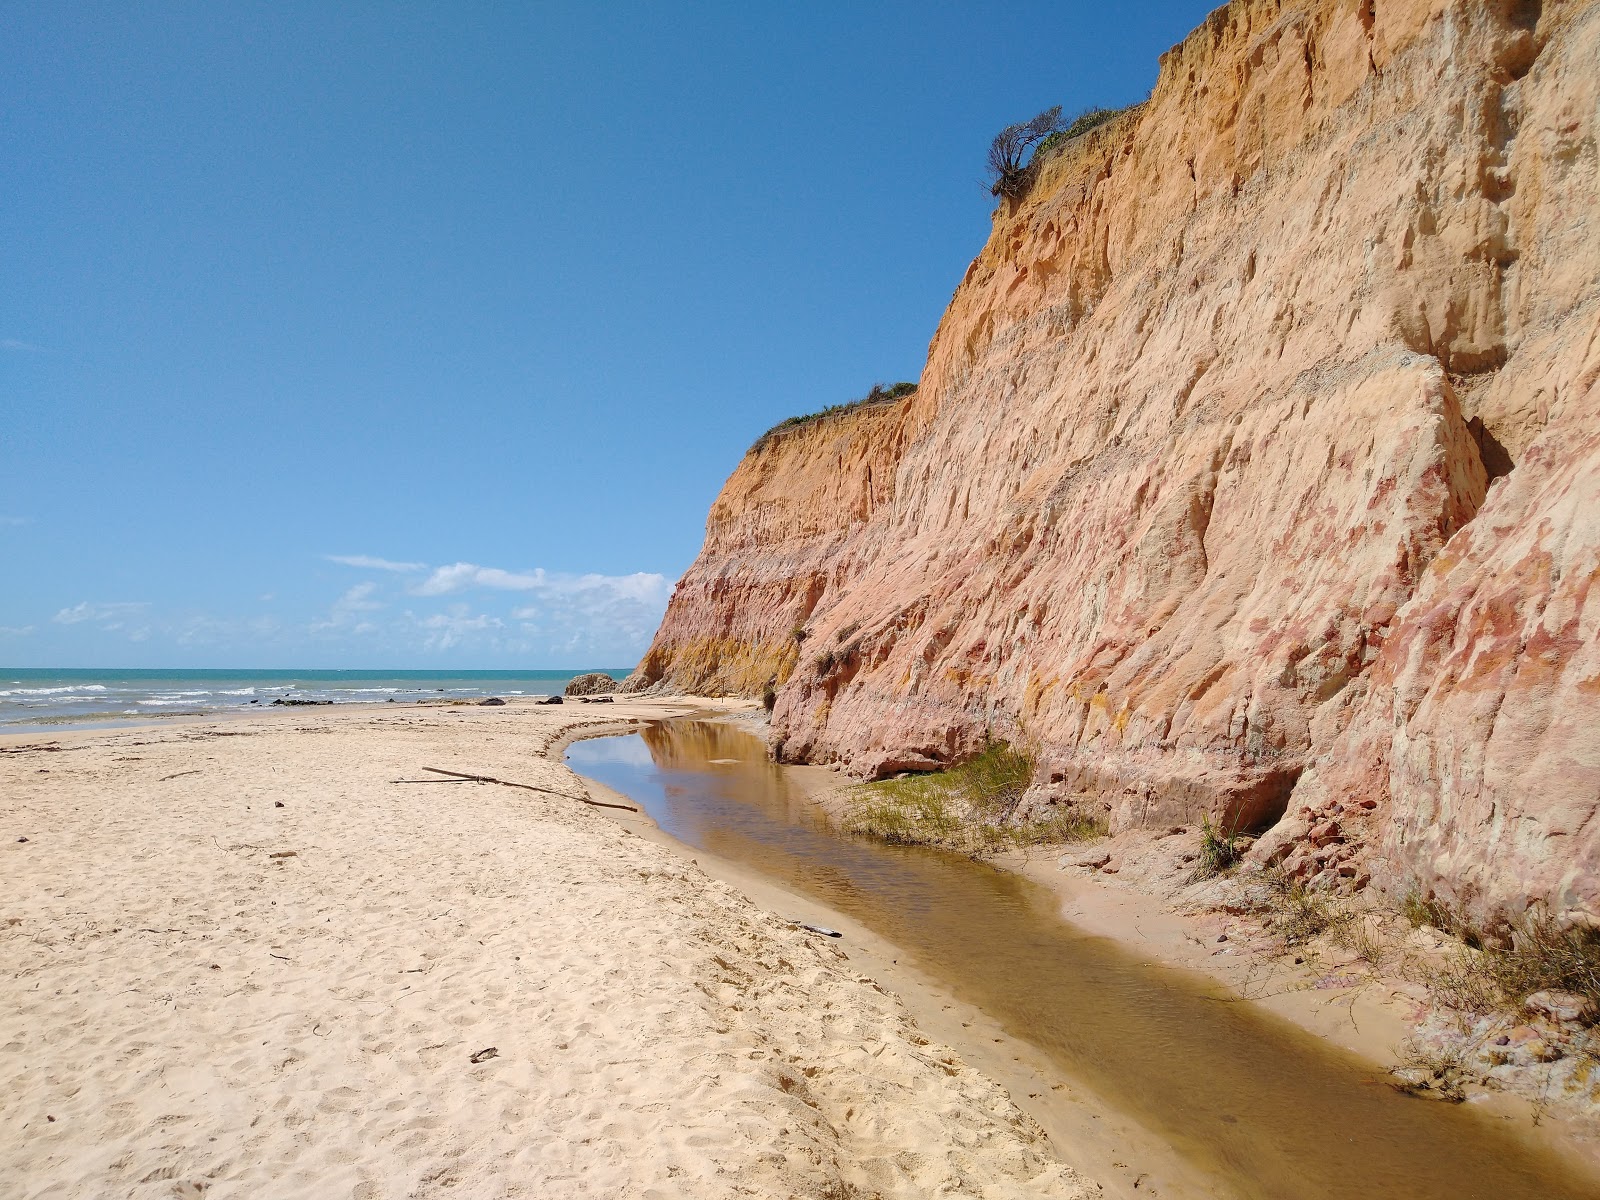 Amendoeiras Plajı'in fotoğrafı geniş plaj ile birlikte